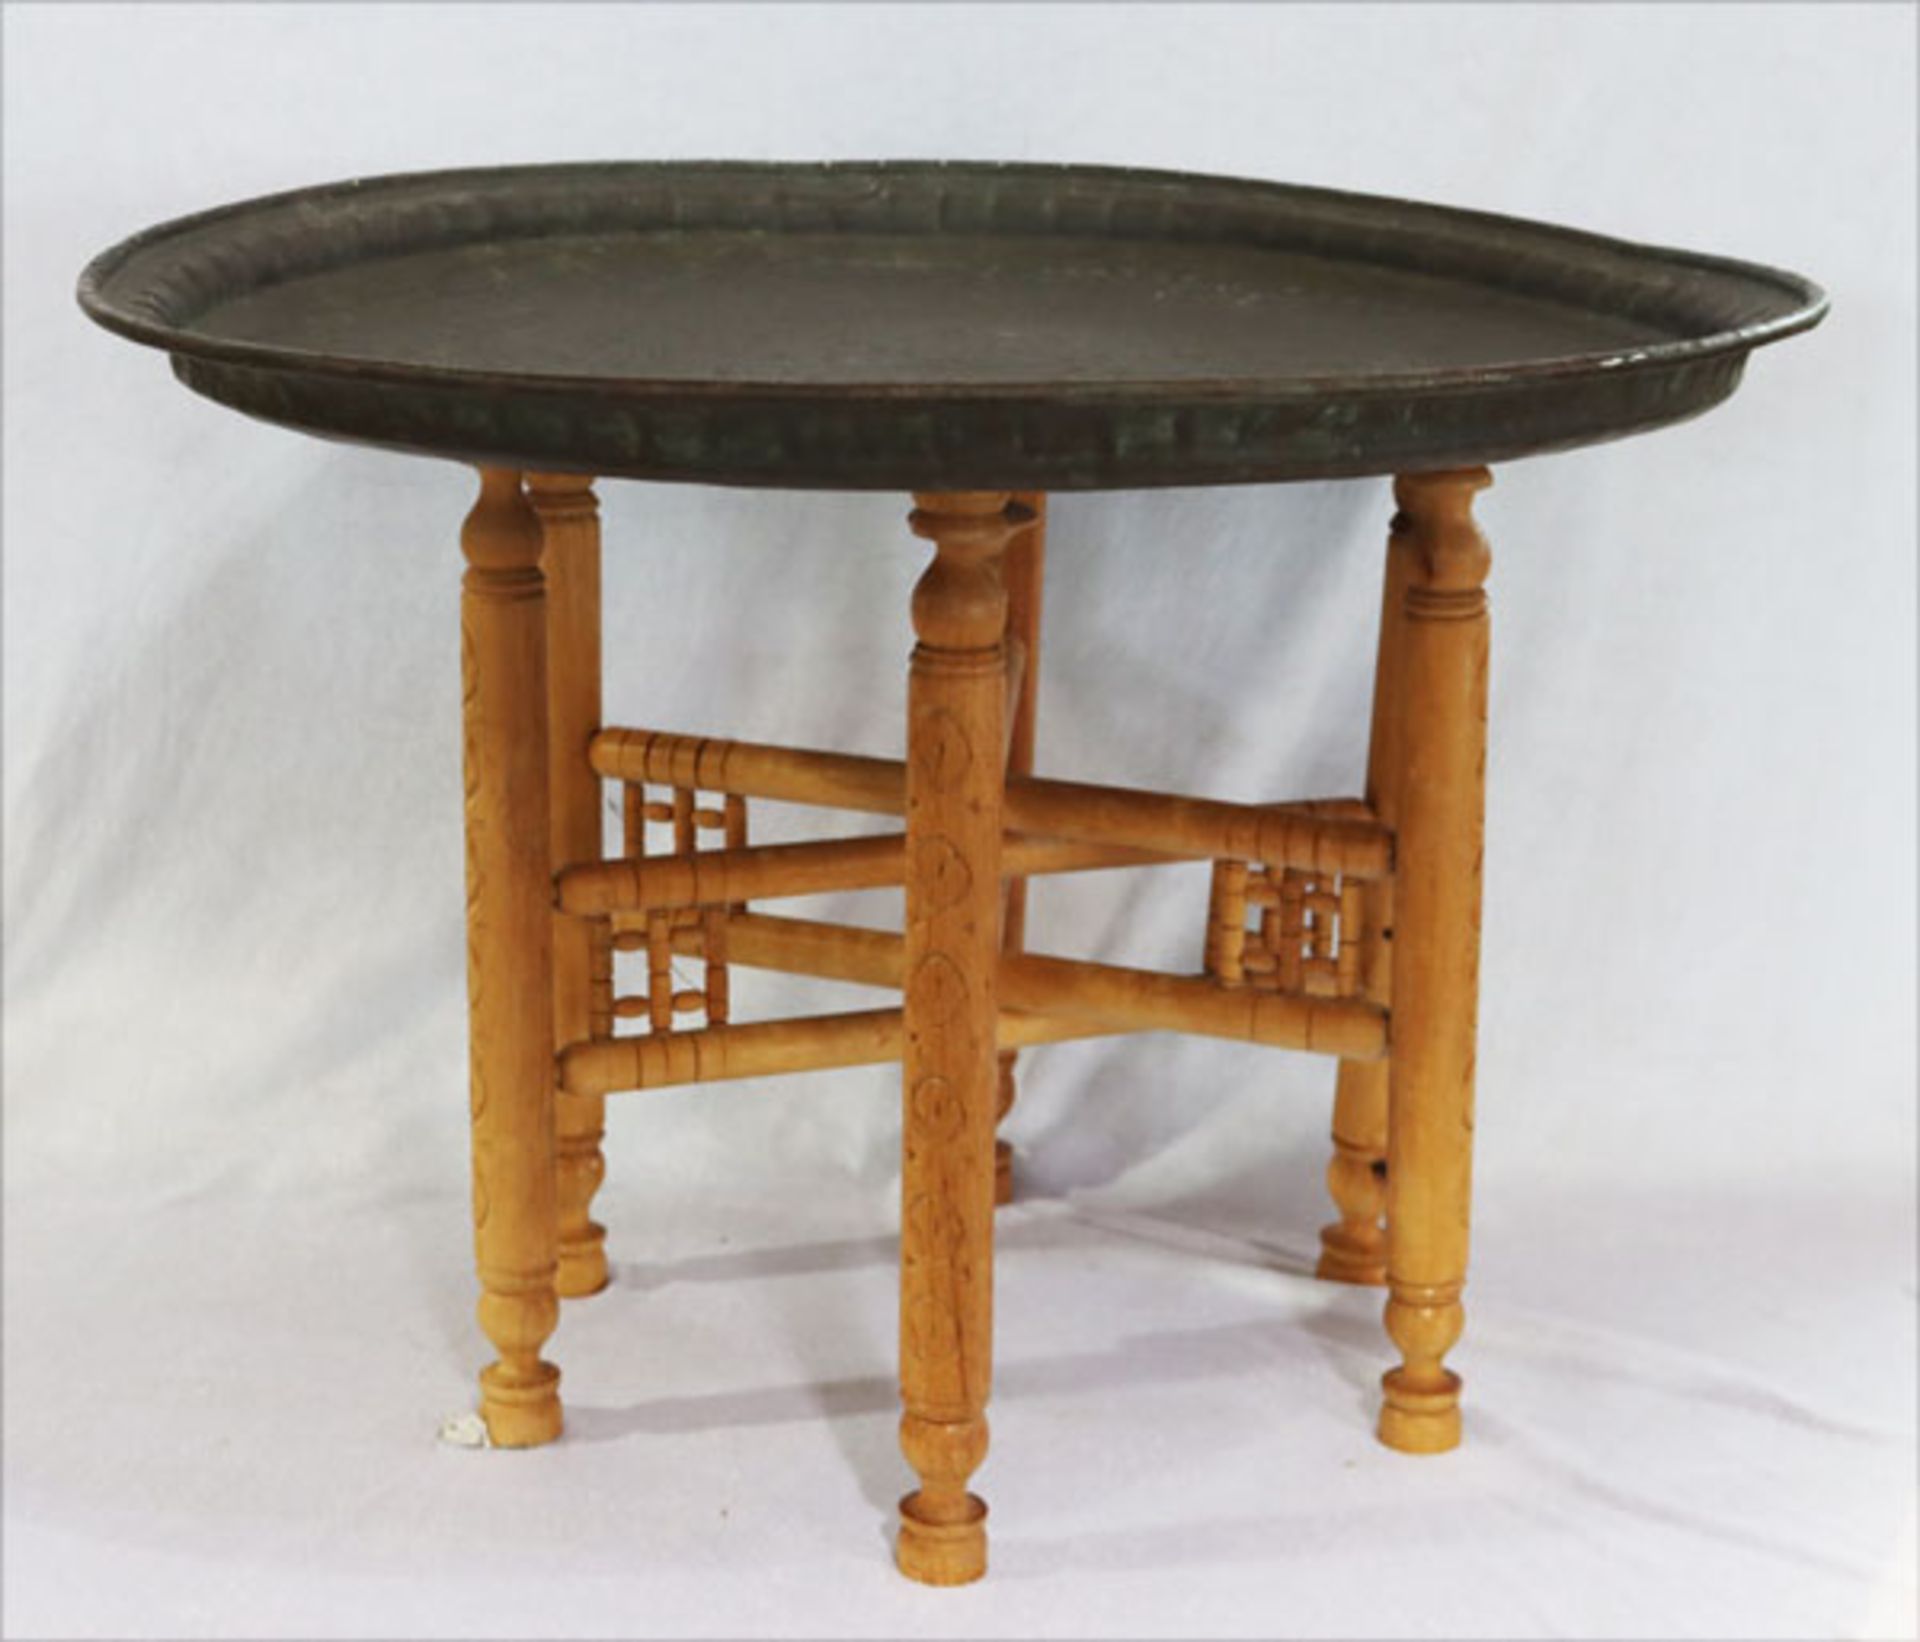 Orient Teetisch, Kupfer mit klappbarem Holzuntergestell, H 50 cm, D 72,5 cm, Gebrauchsspuren